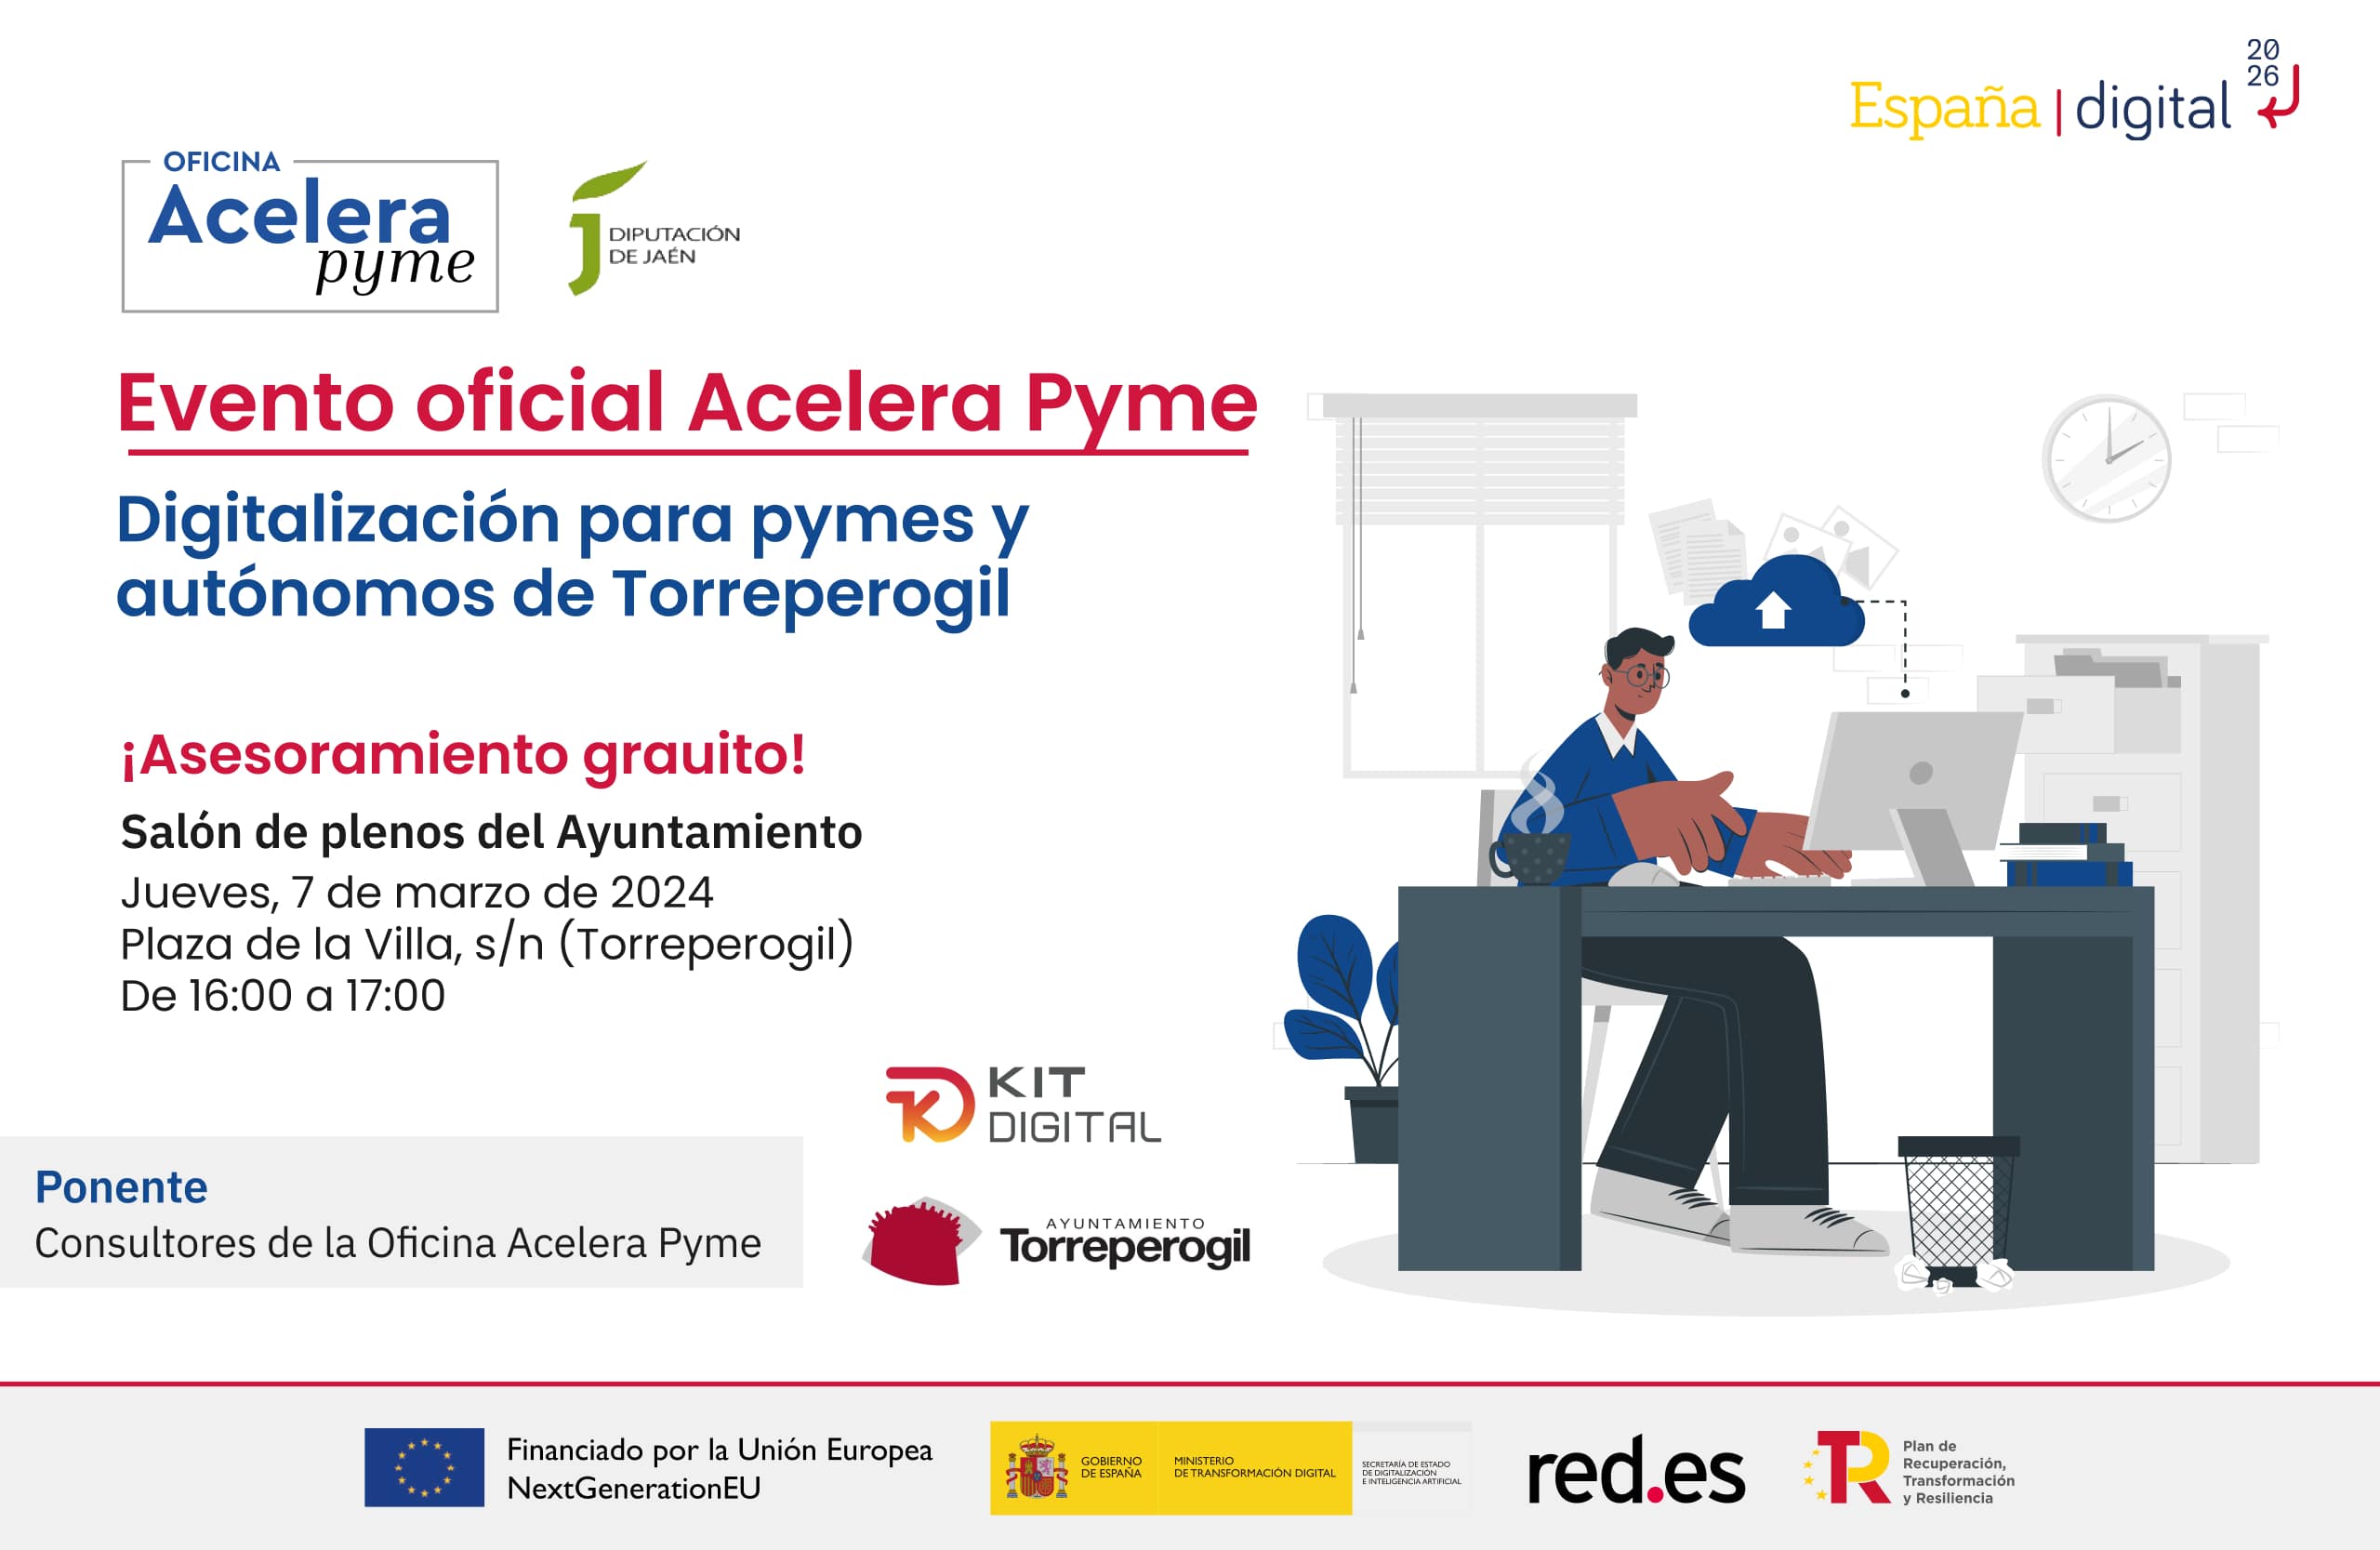 Cartel del evento de presentación de la Oficina Acelera Pyme de Jaén en Torreperogil